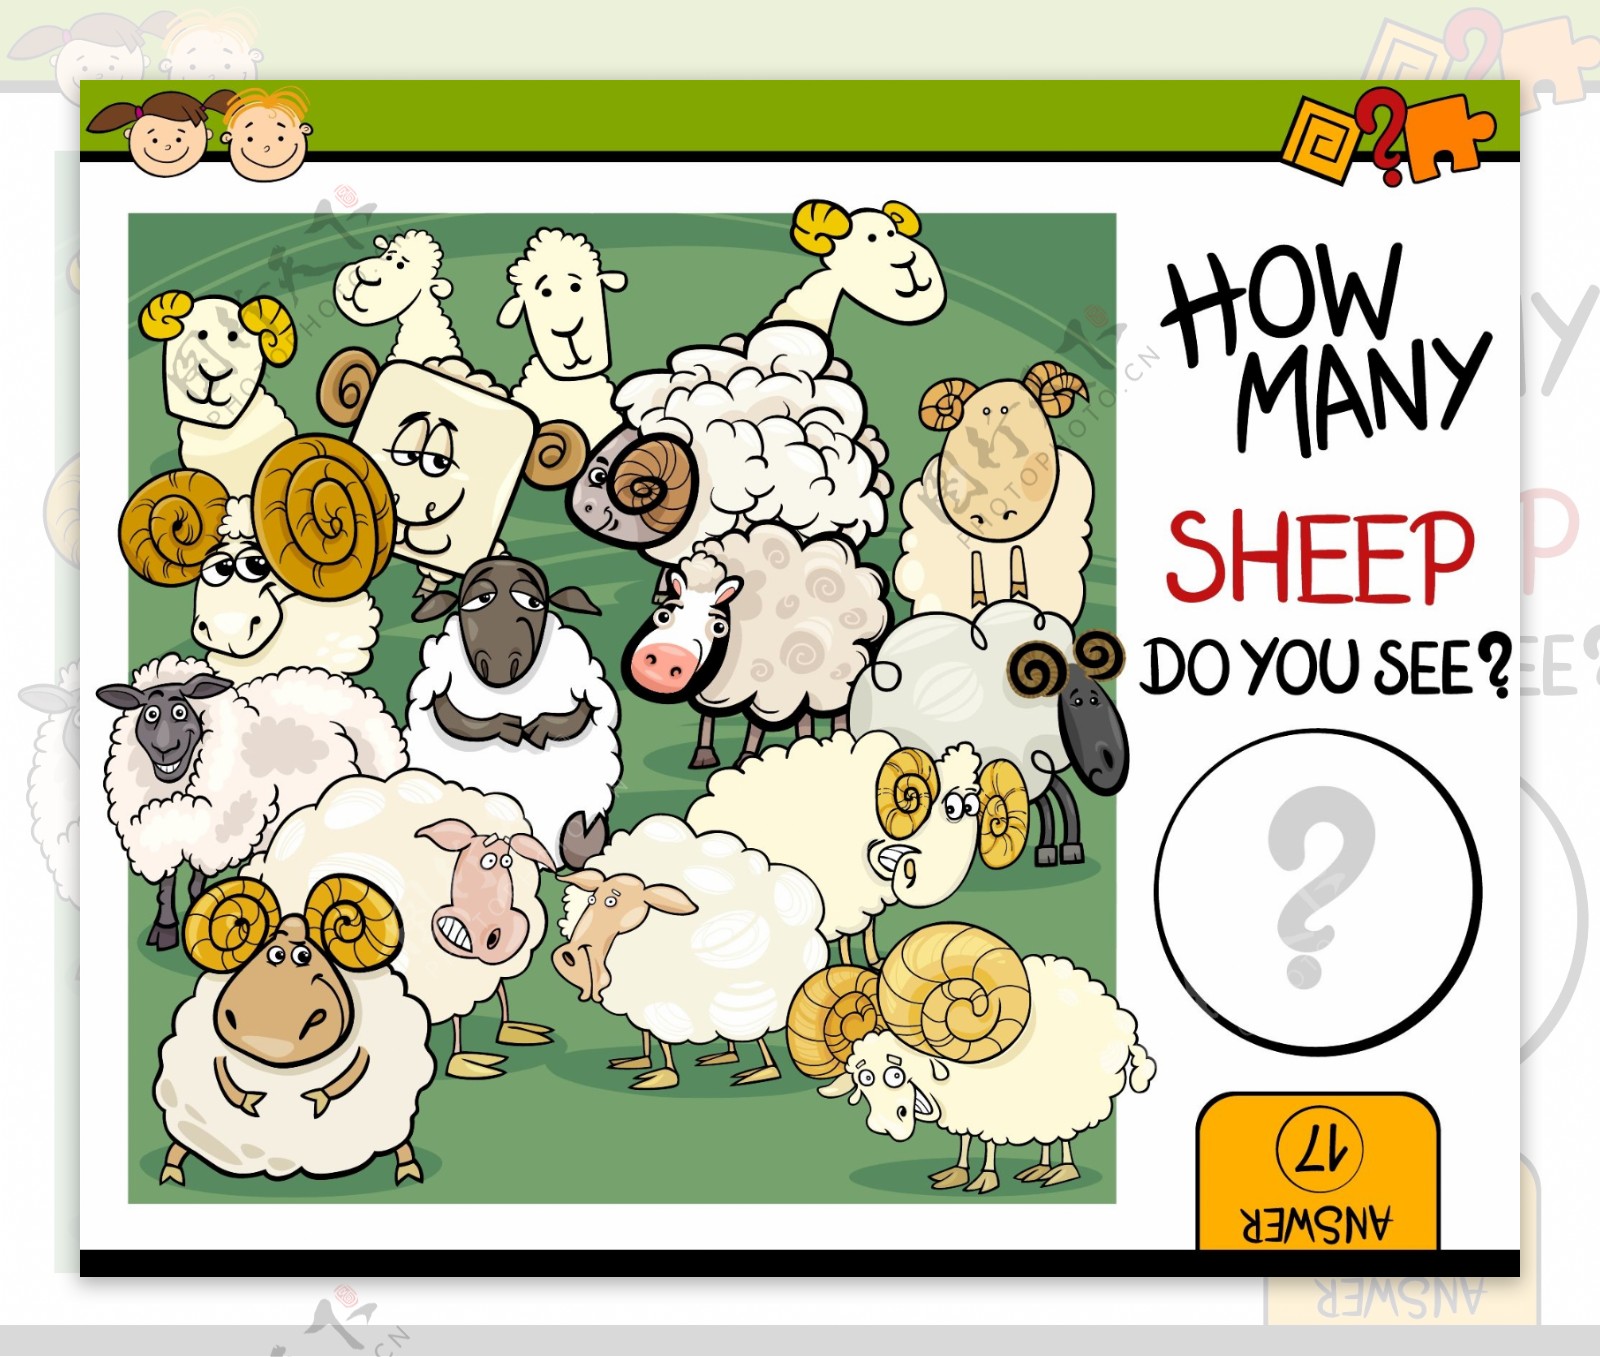 各种羊插图图片